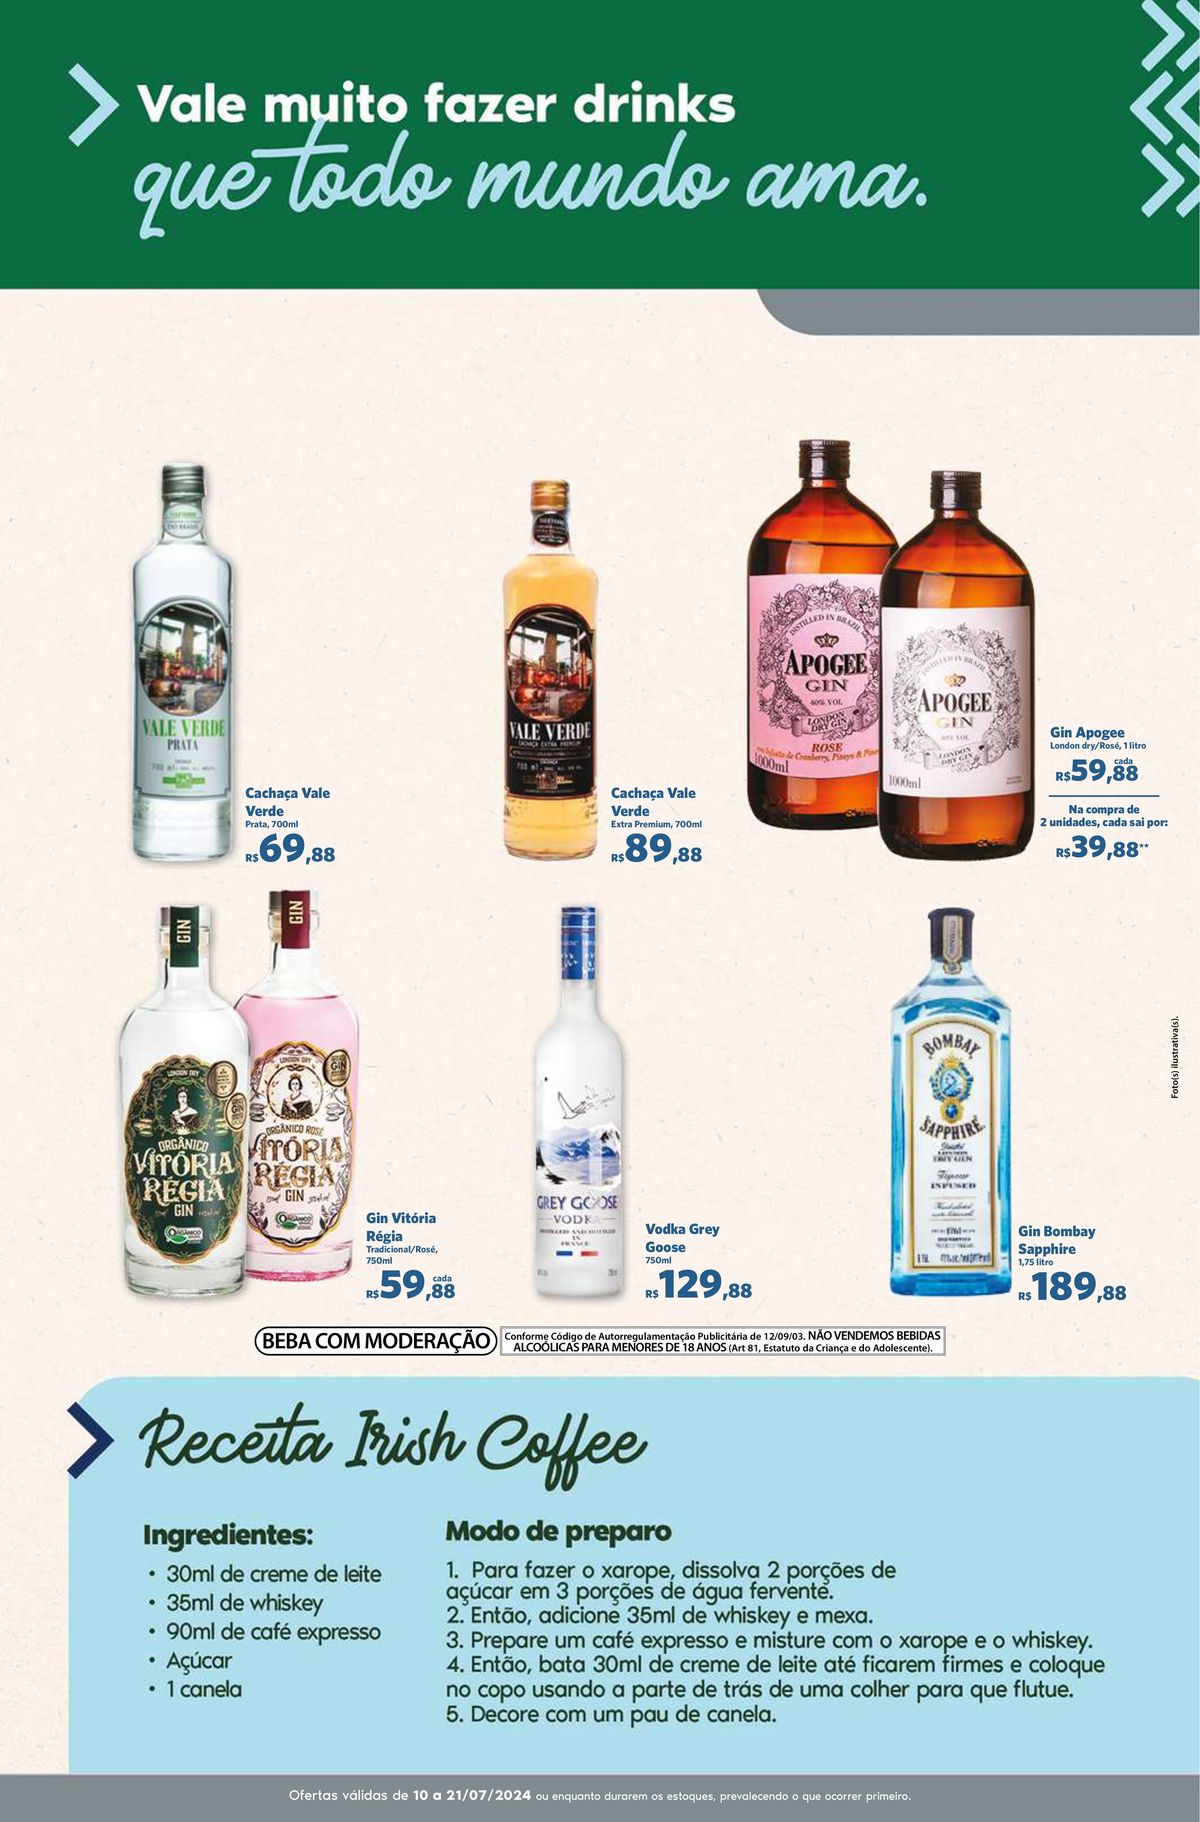 Oferta de bebidas alcoólicas e ingredientes para drinks